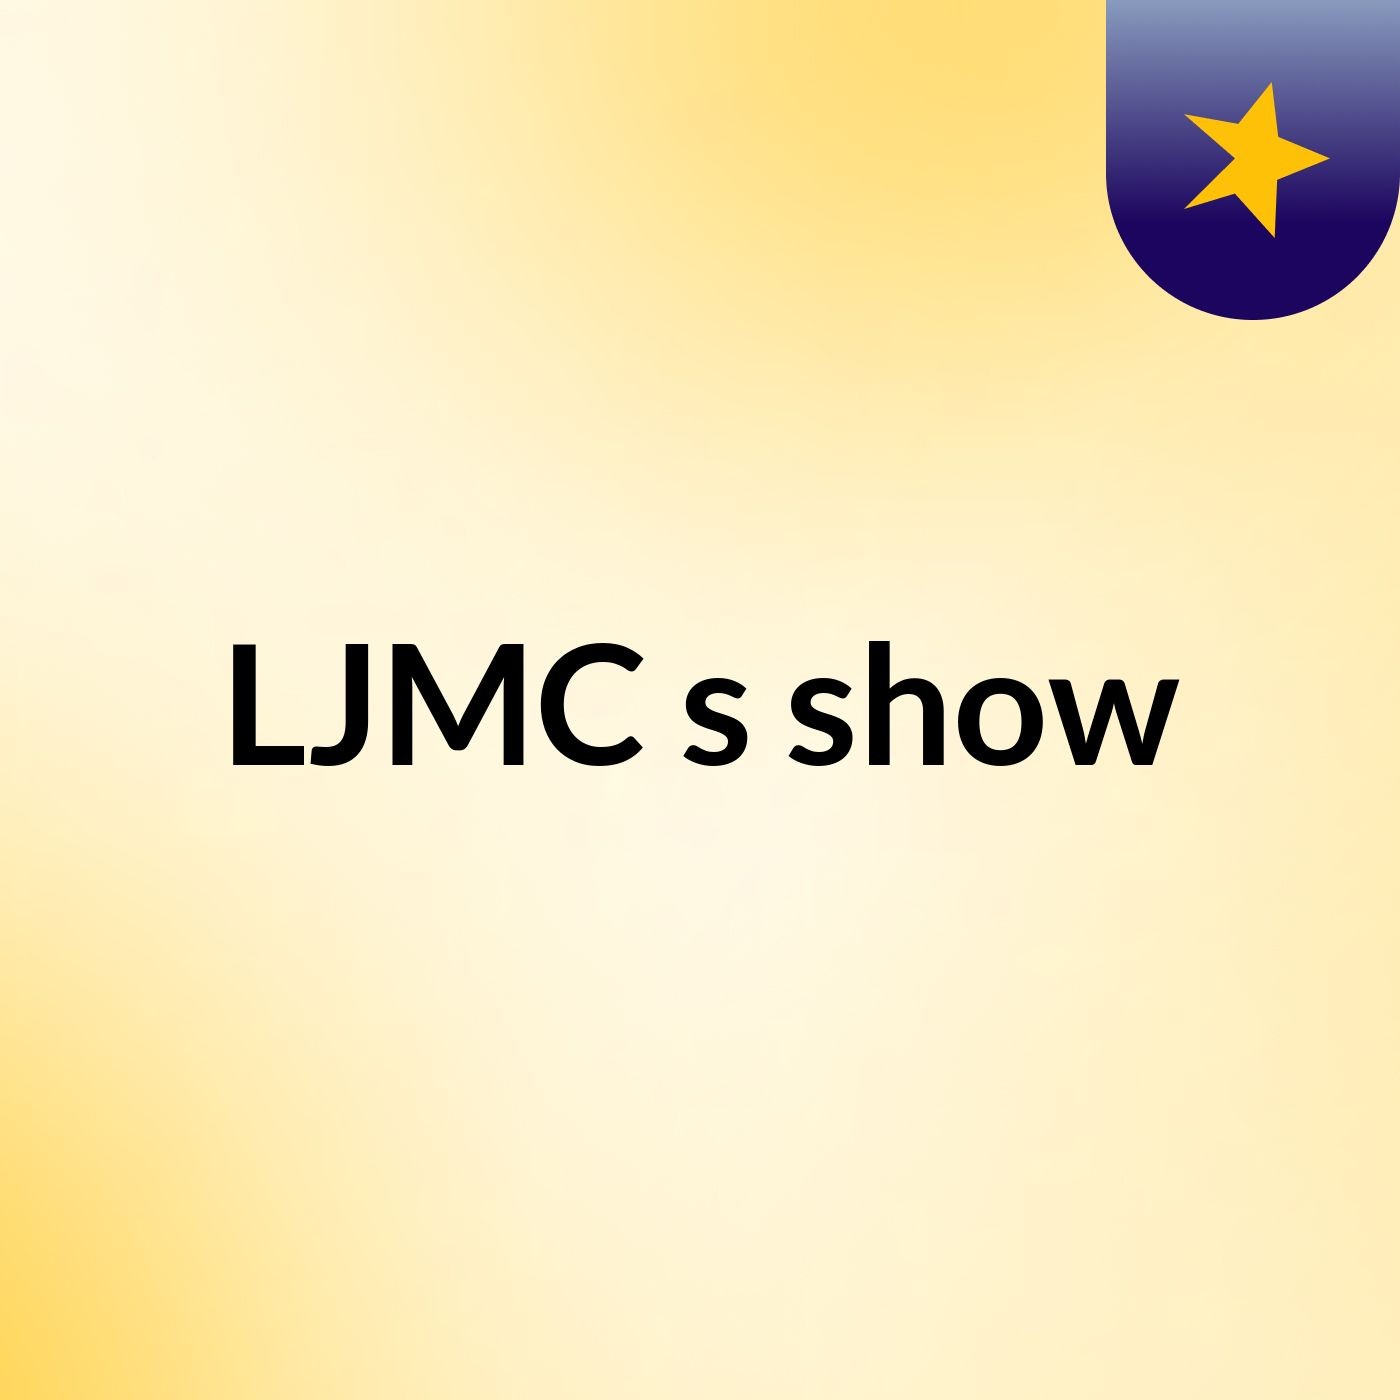 LJMC ,'s show